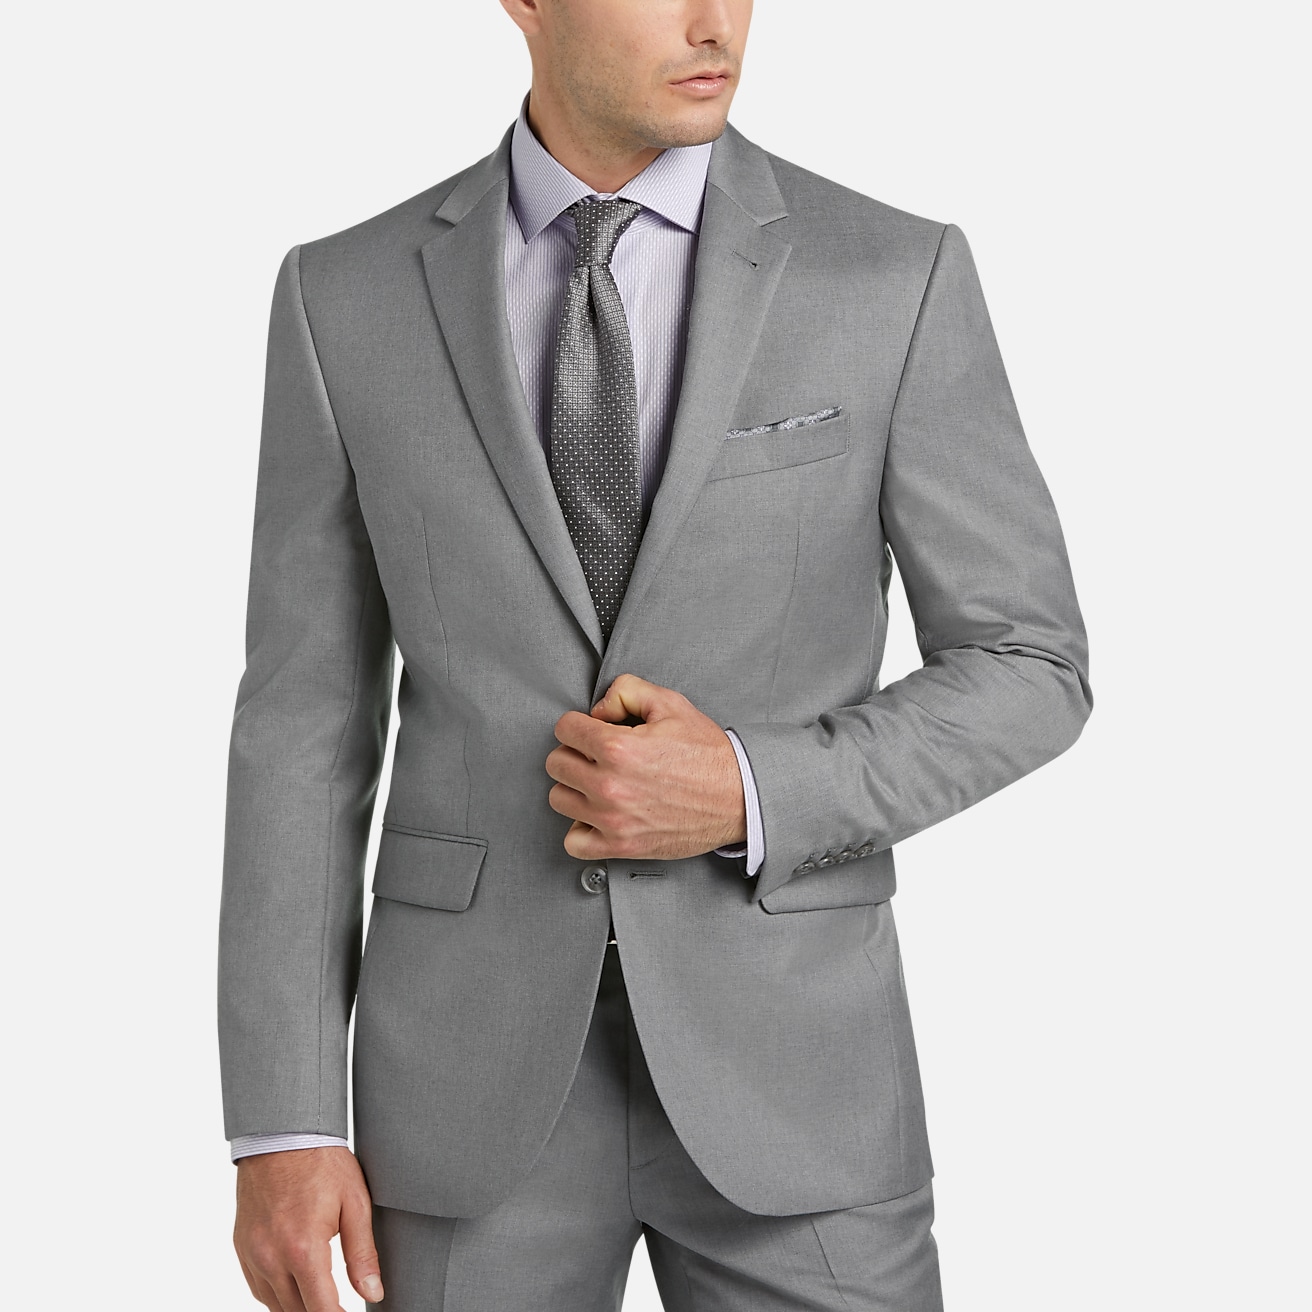 JOE Joseph Abboud Slim Fit Suit, All Sale